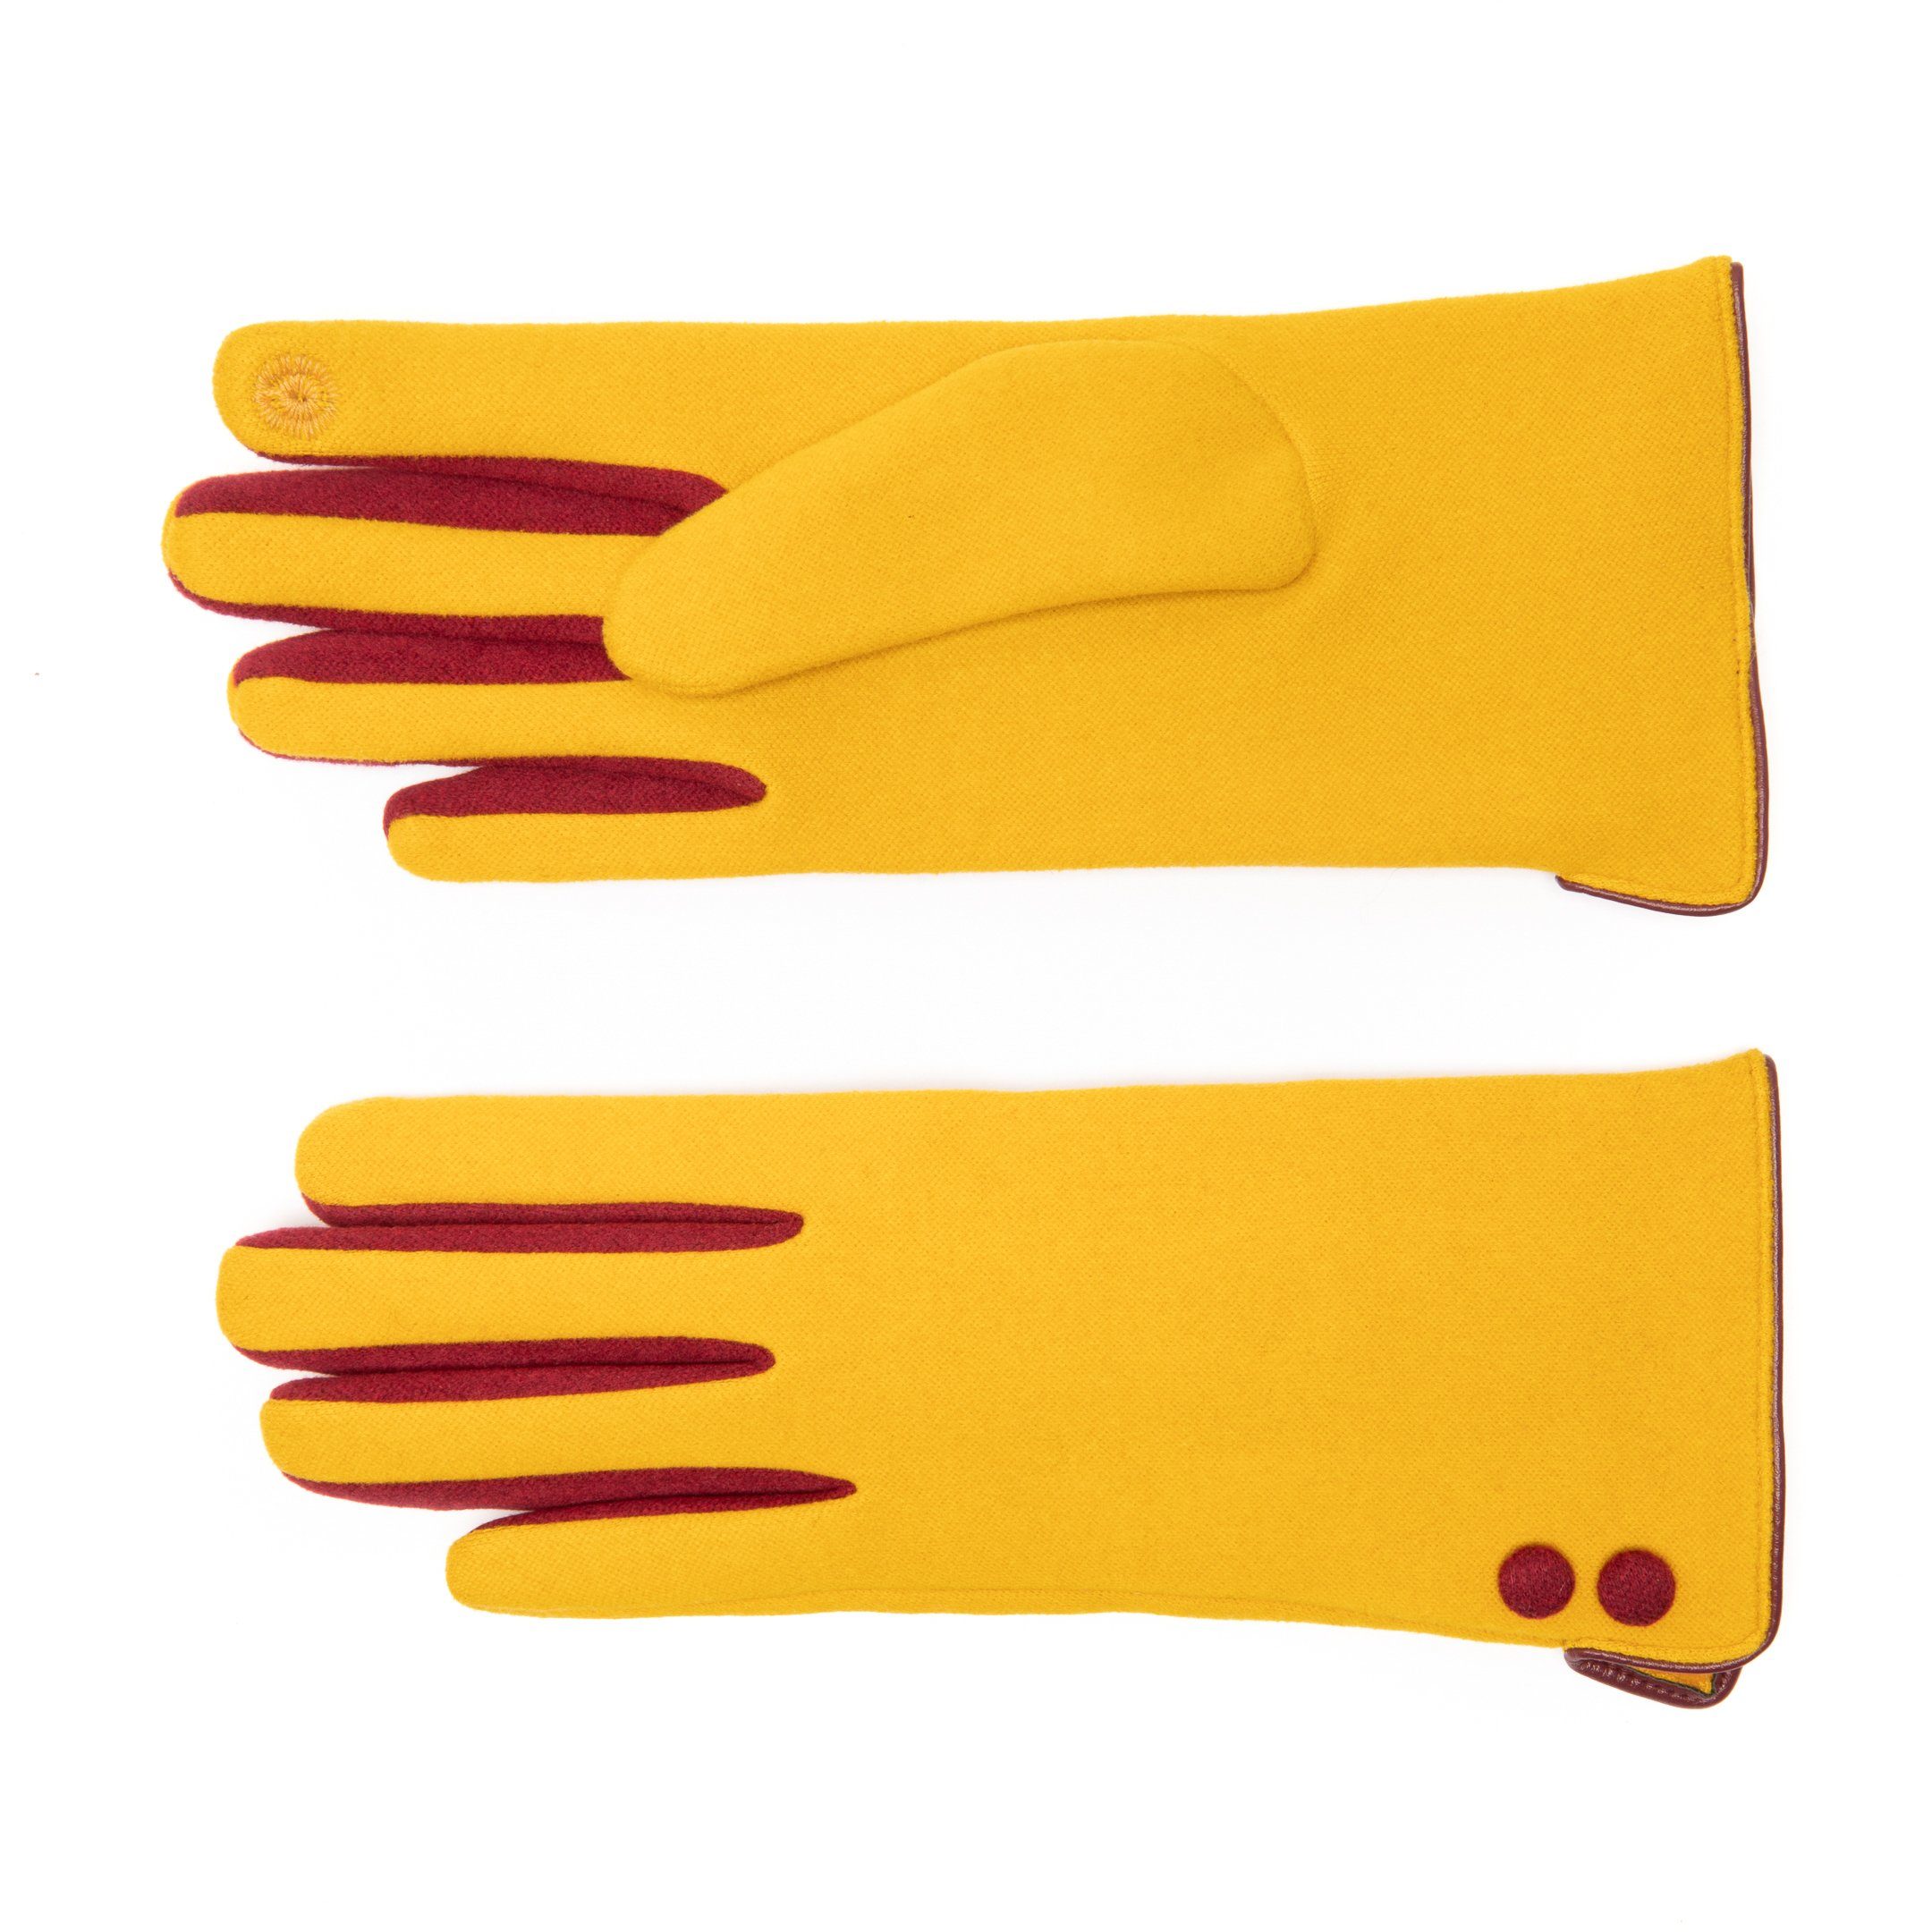 EEM Damen-6045 Strickhandschuhe gelb-weinrot